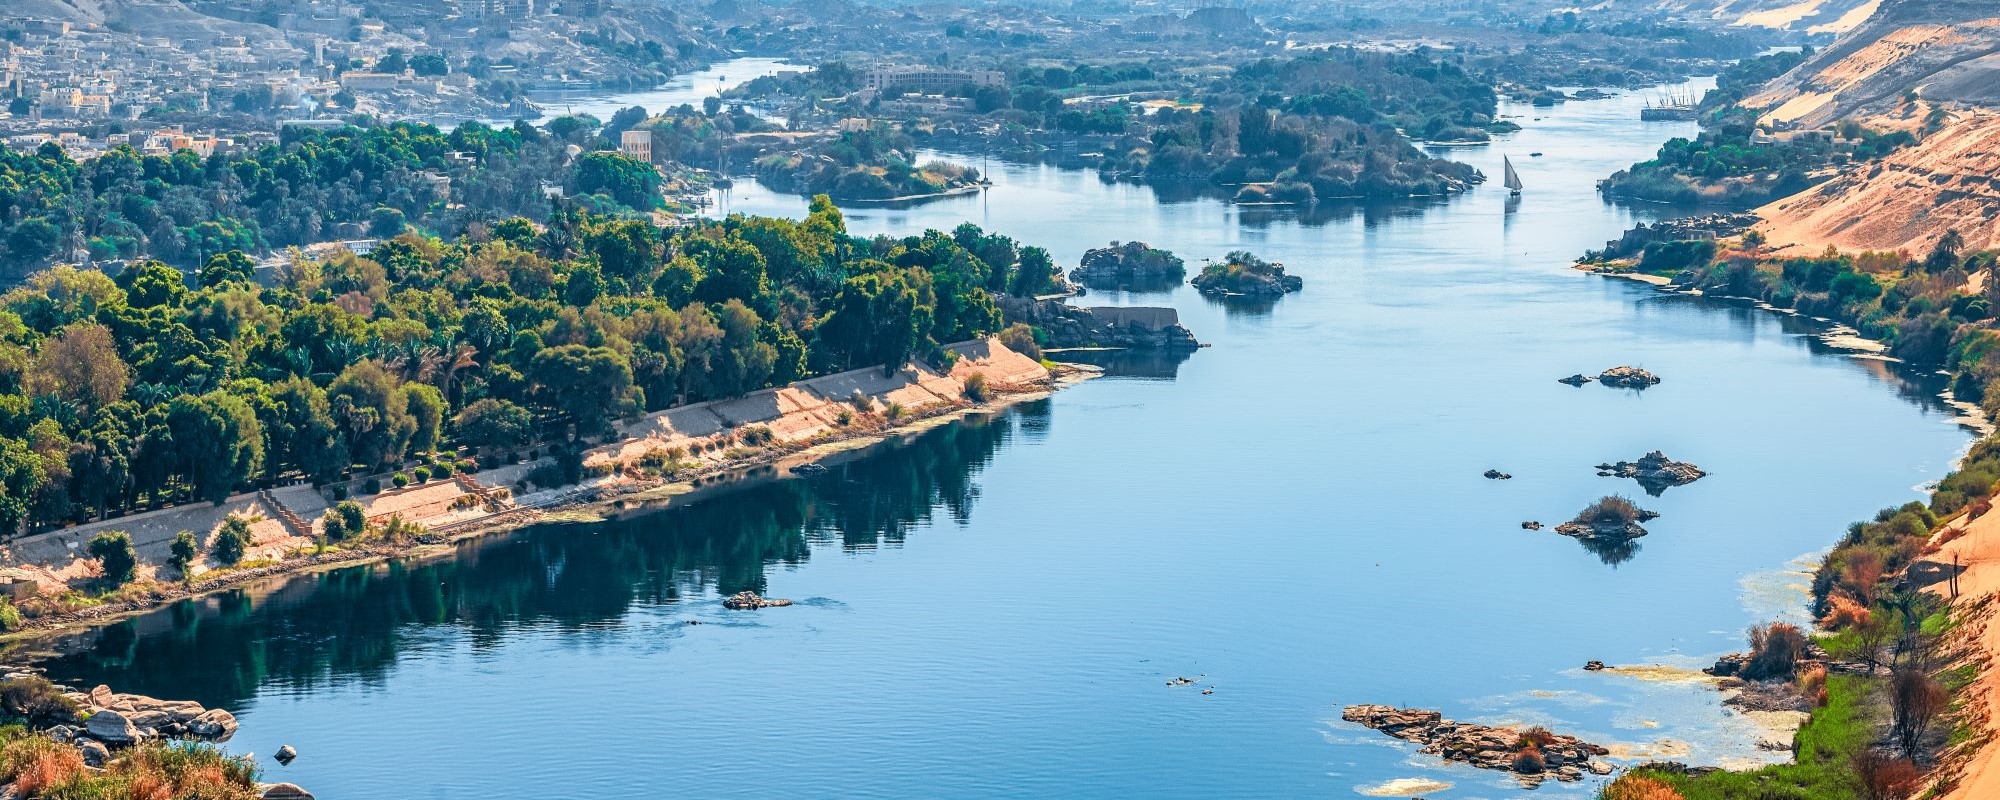 Ägypten - Ausblick auf Nil mit Landschaft und Boot